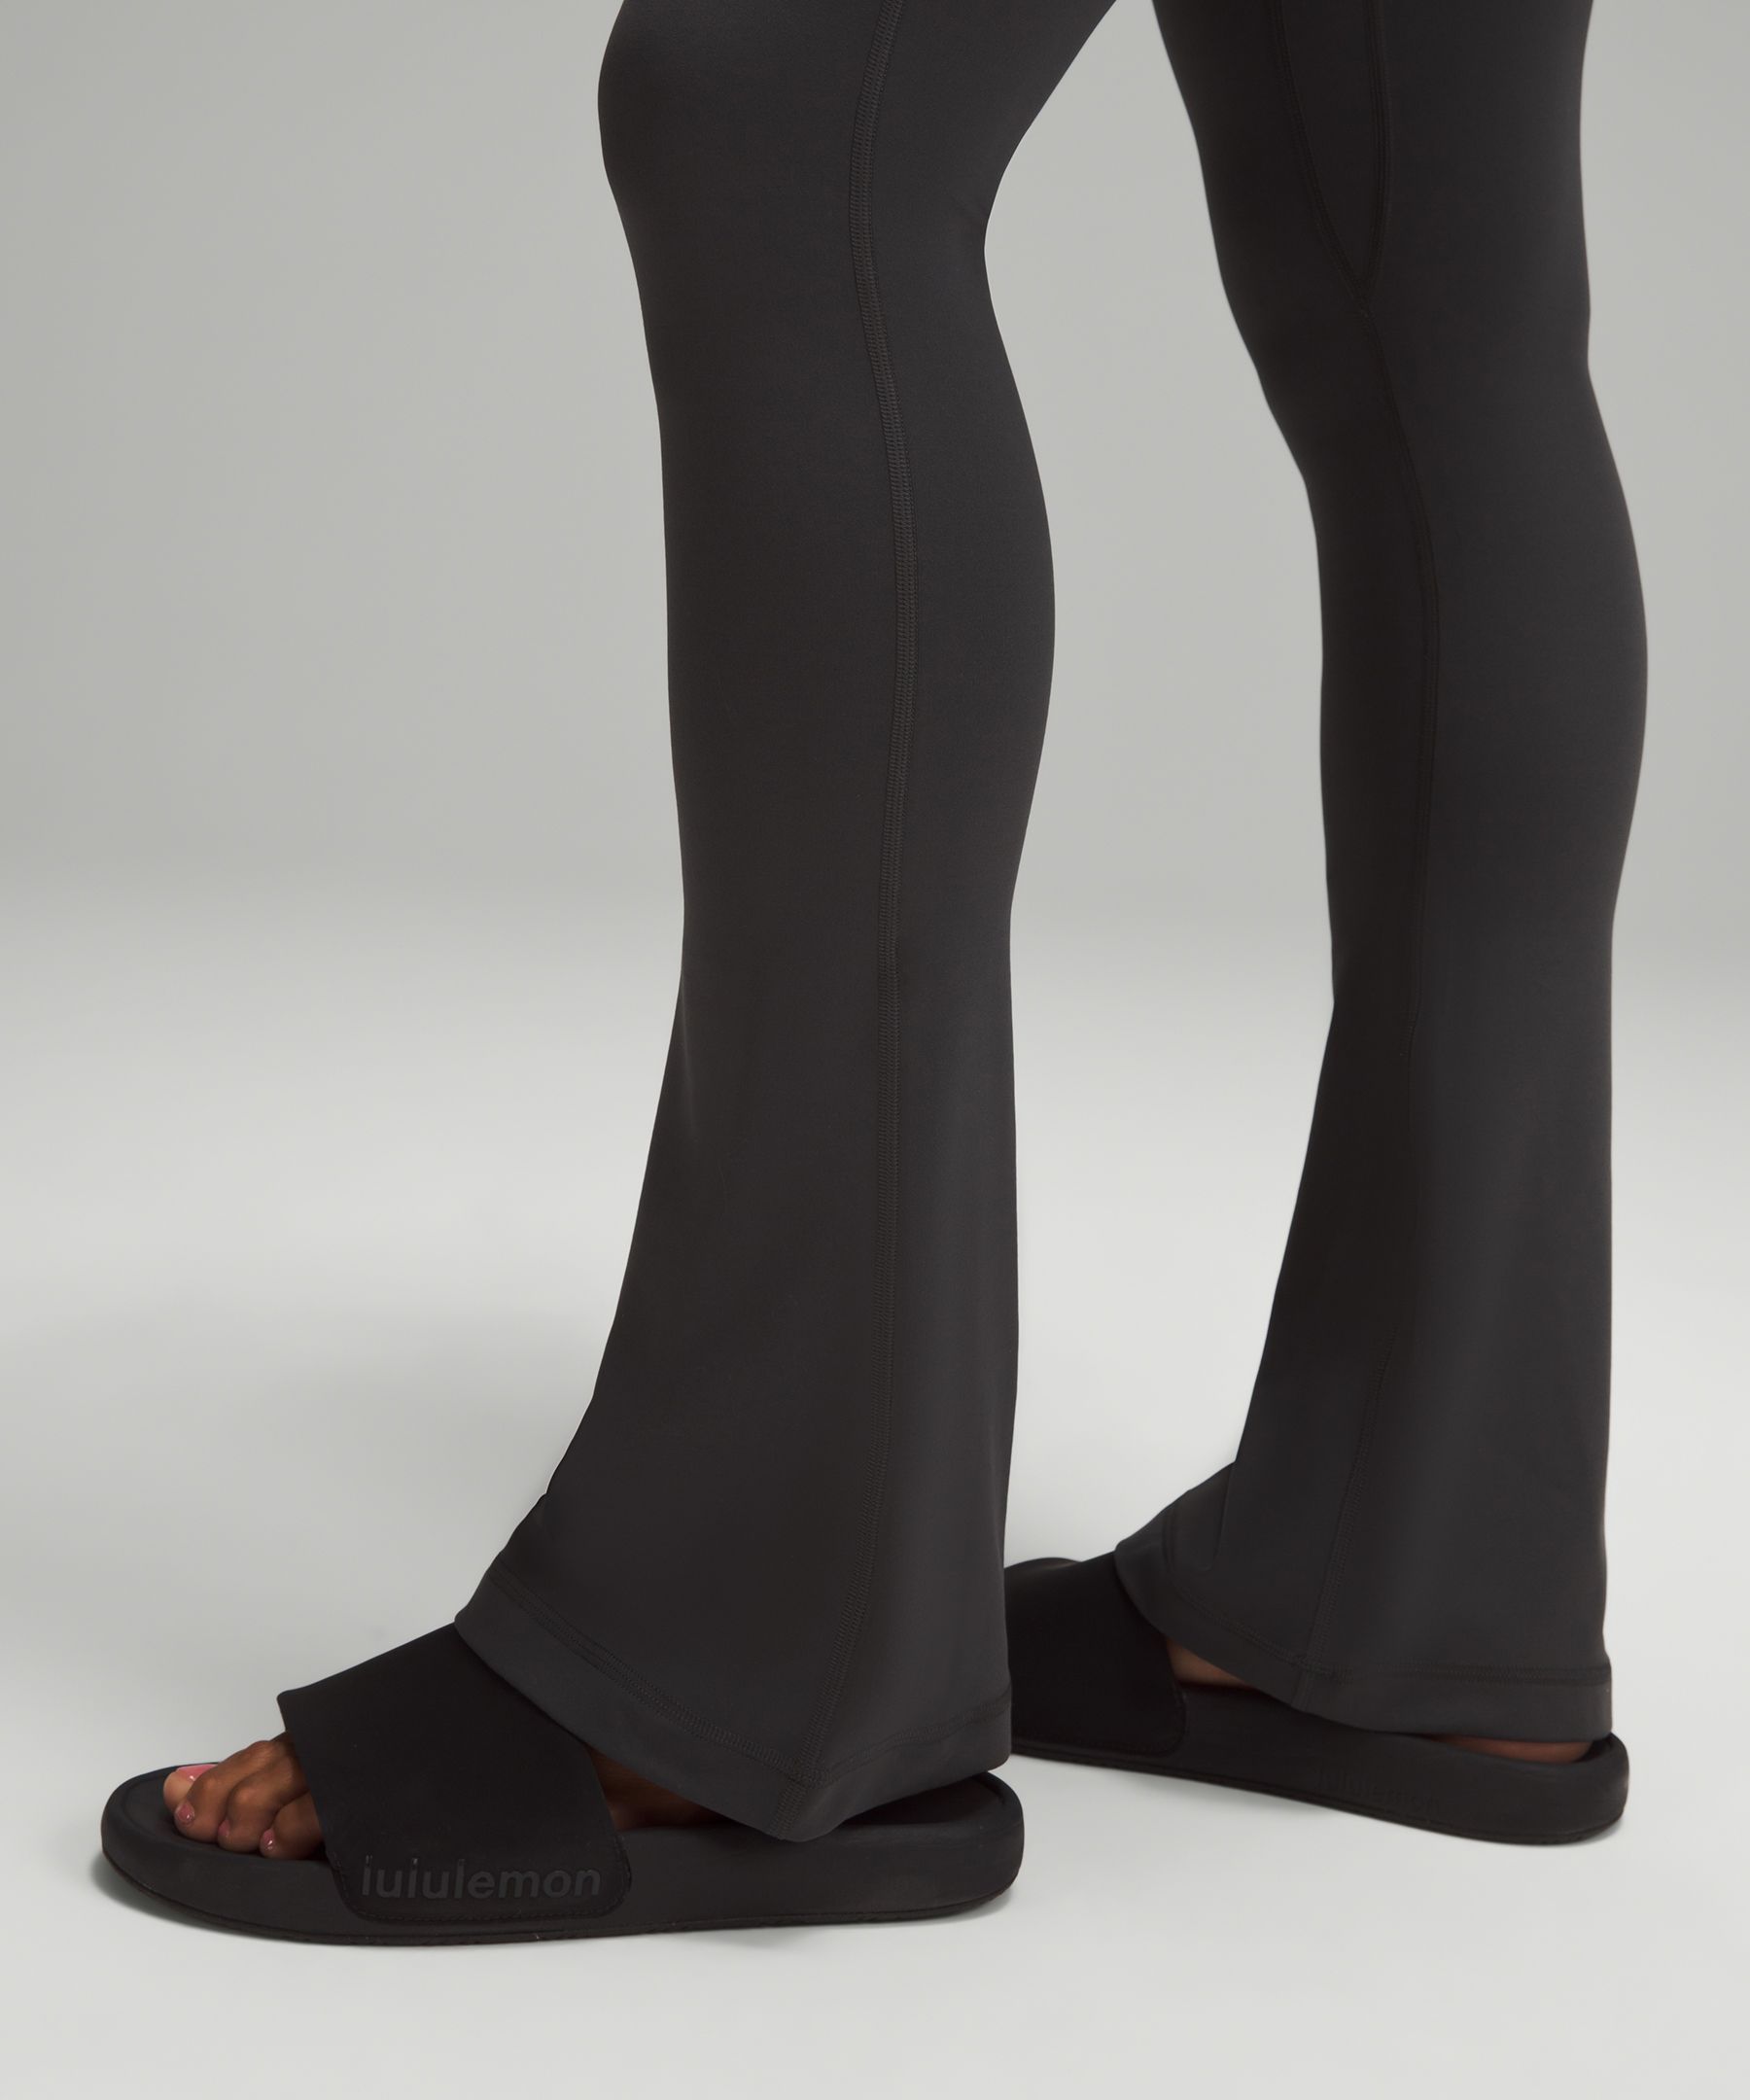 lululemon Align™ High-Rise Mini-Flared Pant *Regular, Women's Pants